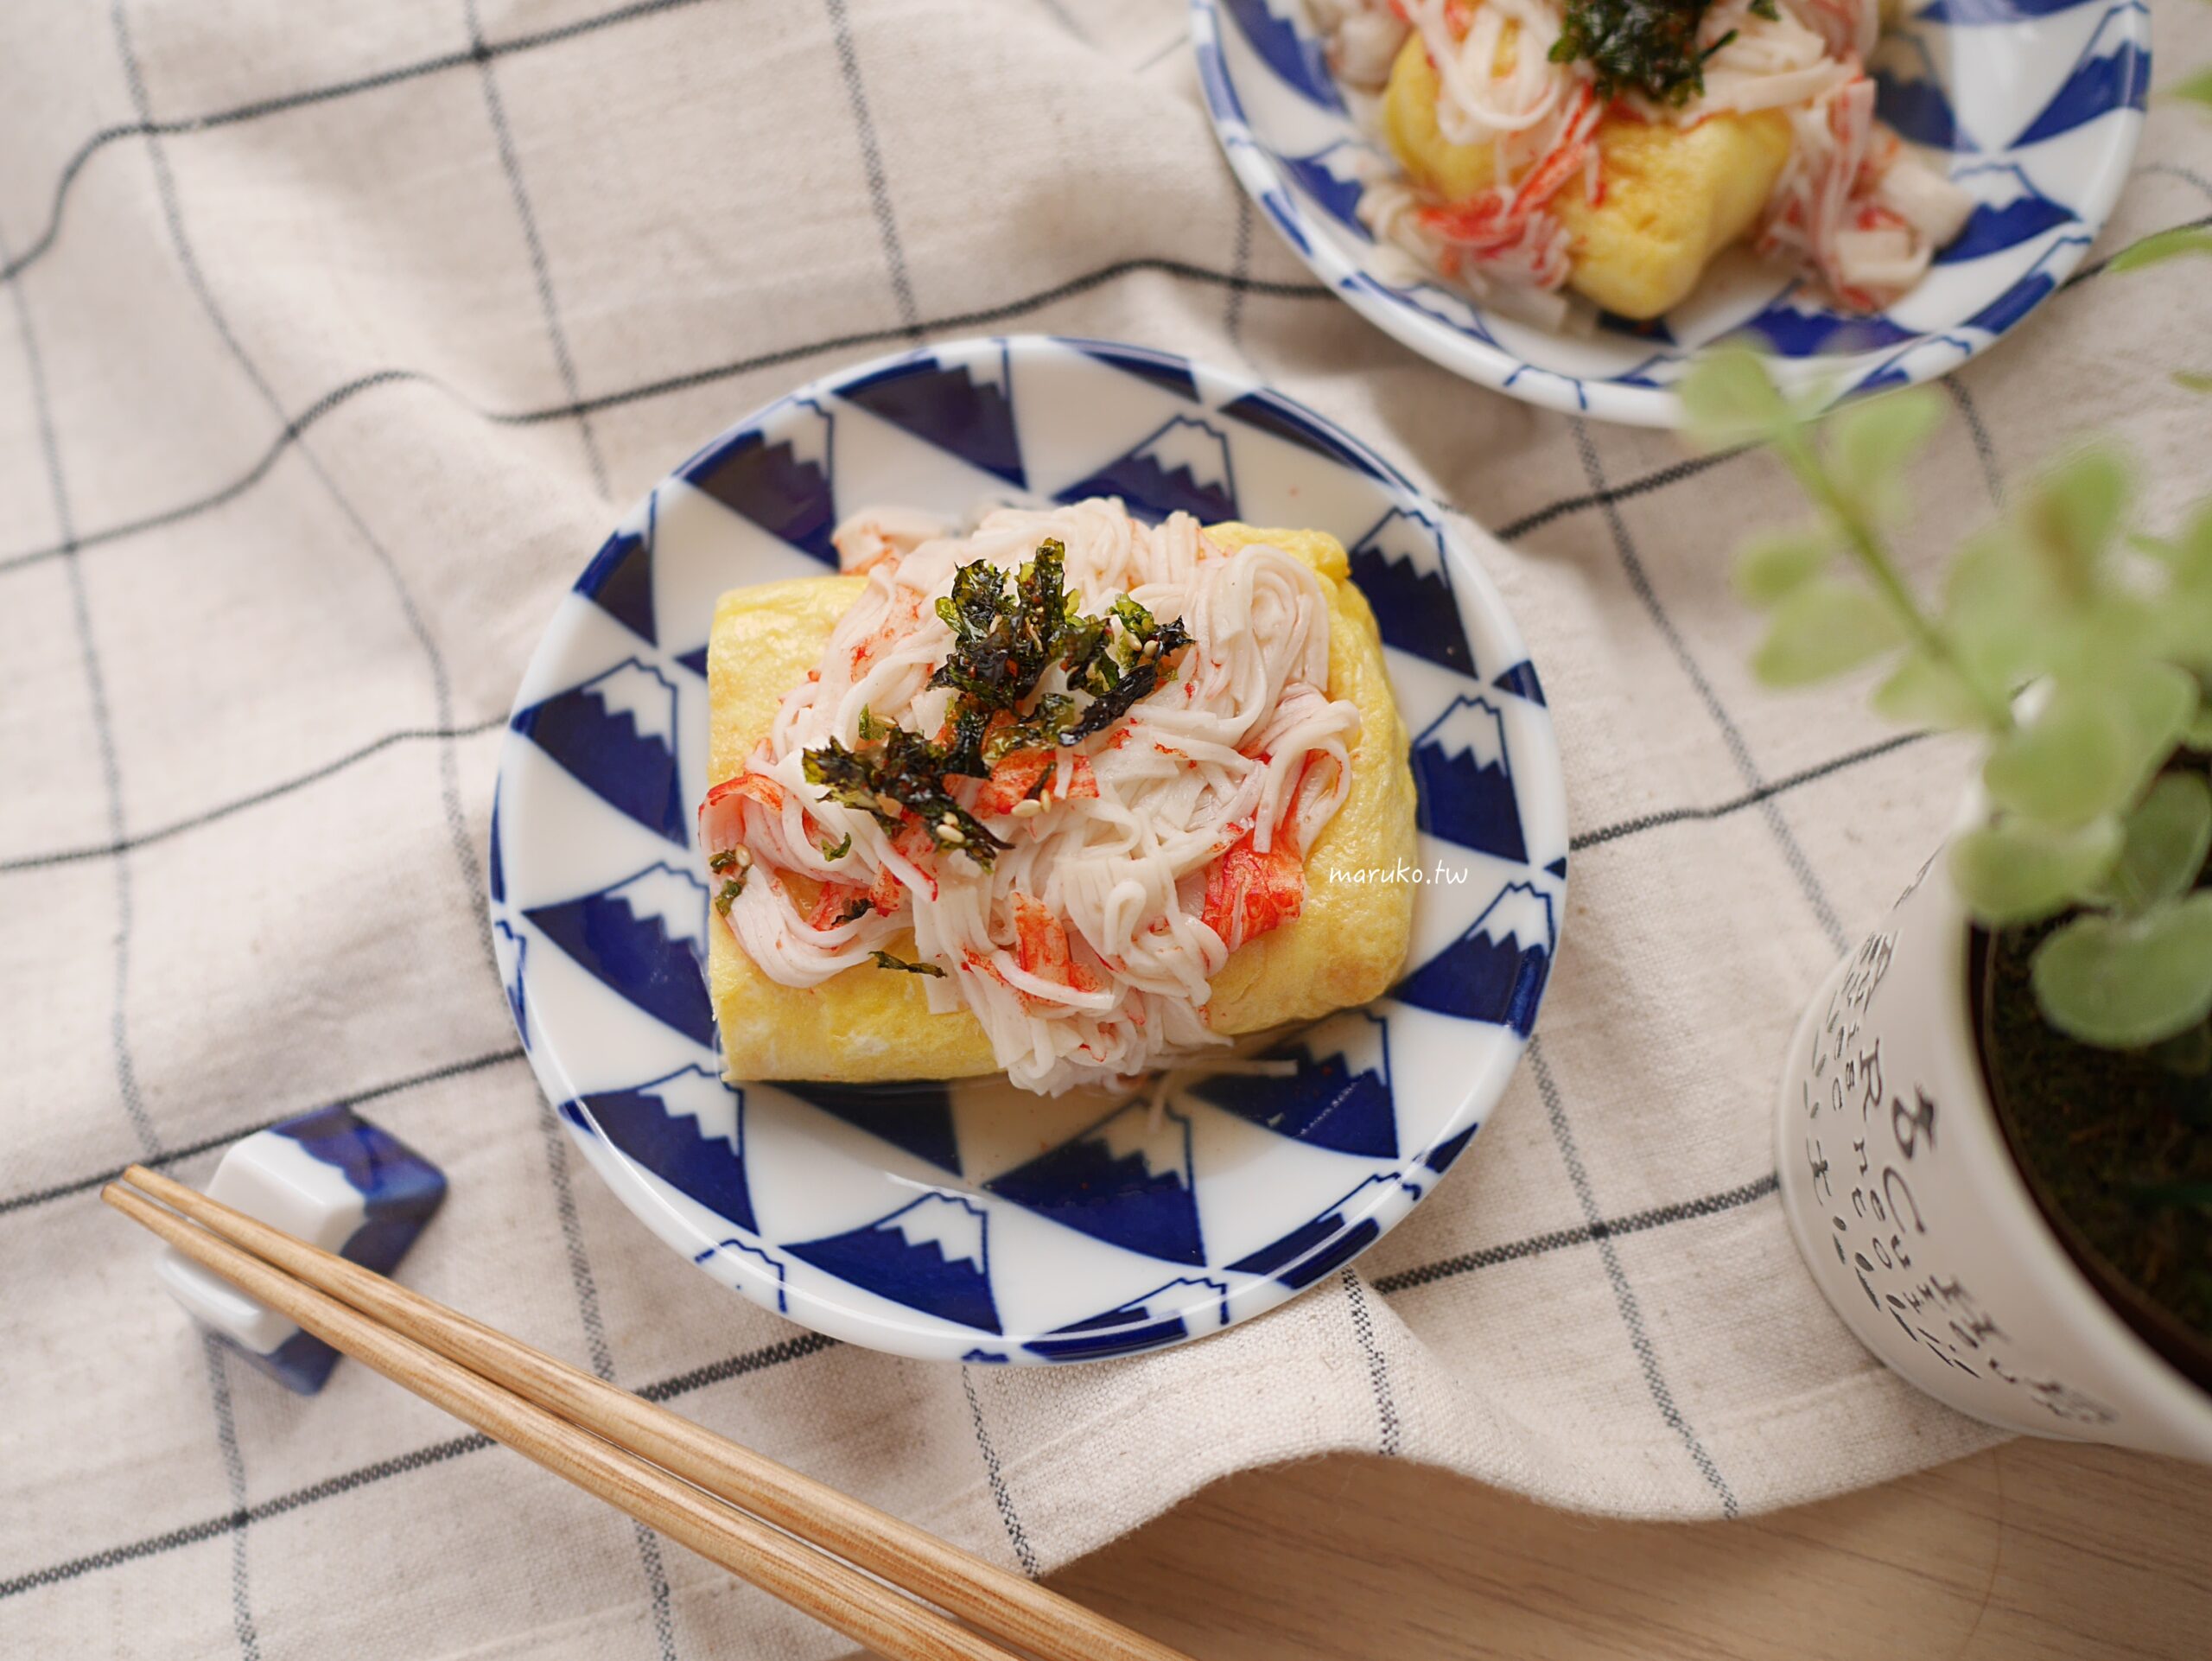 【食譜】玉子燒 日式食堂經典雞蛋捲，在家輕鬆上菜！ @Maruko與美食有個約會